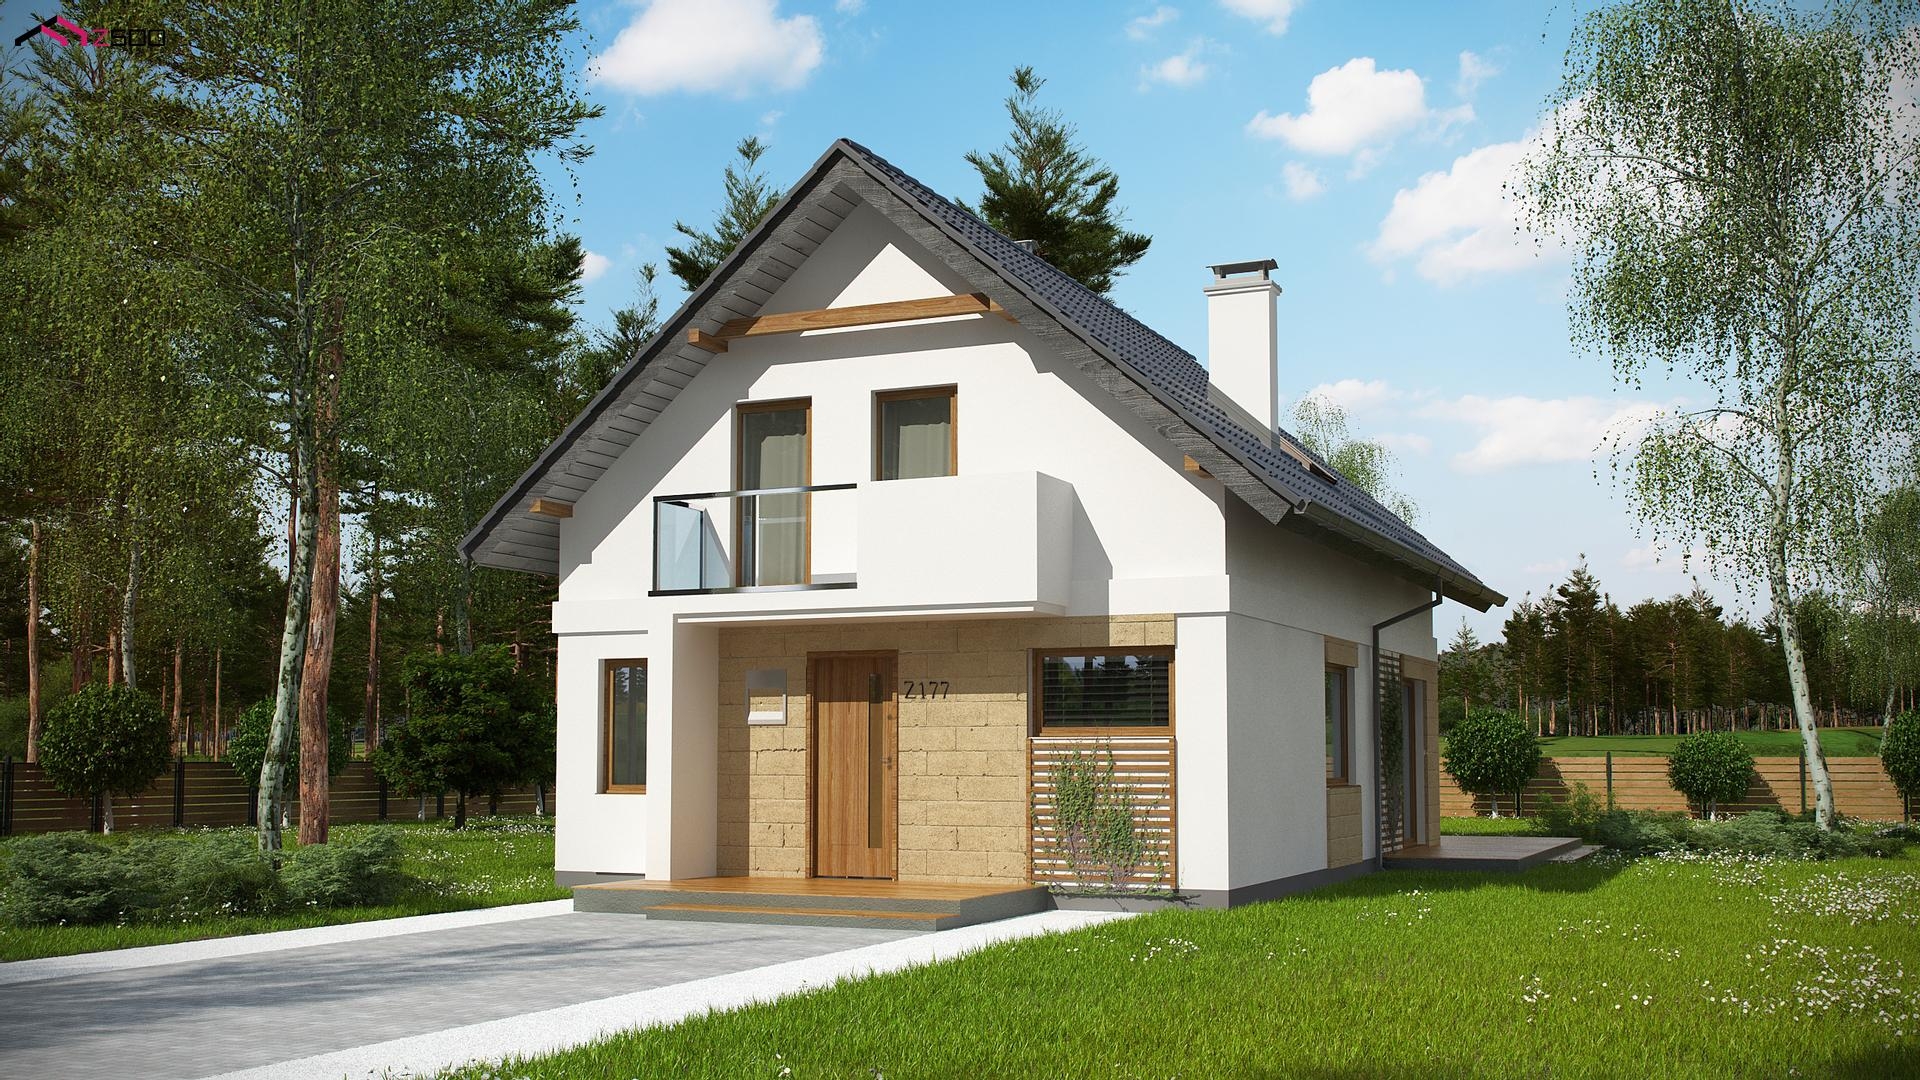 nowoczesny dom parterowy z poddaszem użytkowym prosta bryła szary dwuspadowy dach styl tradycyjny po